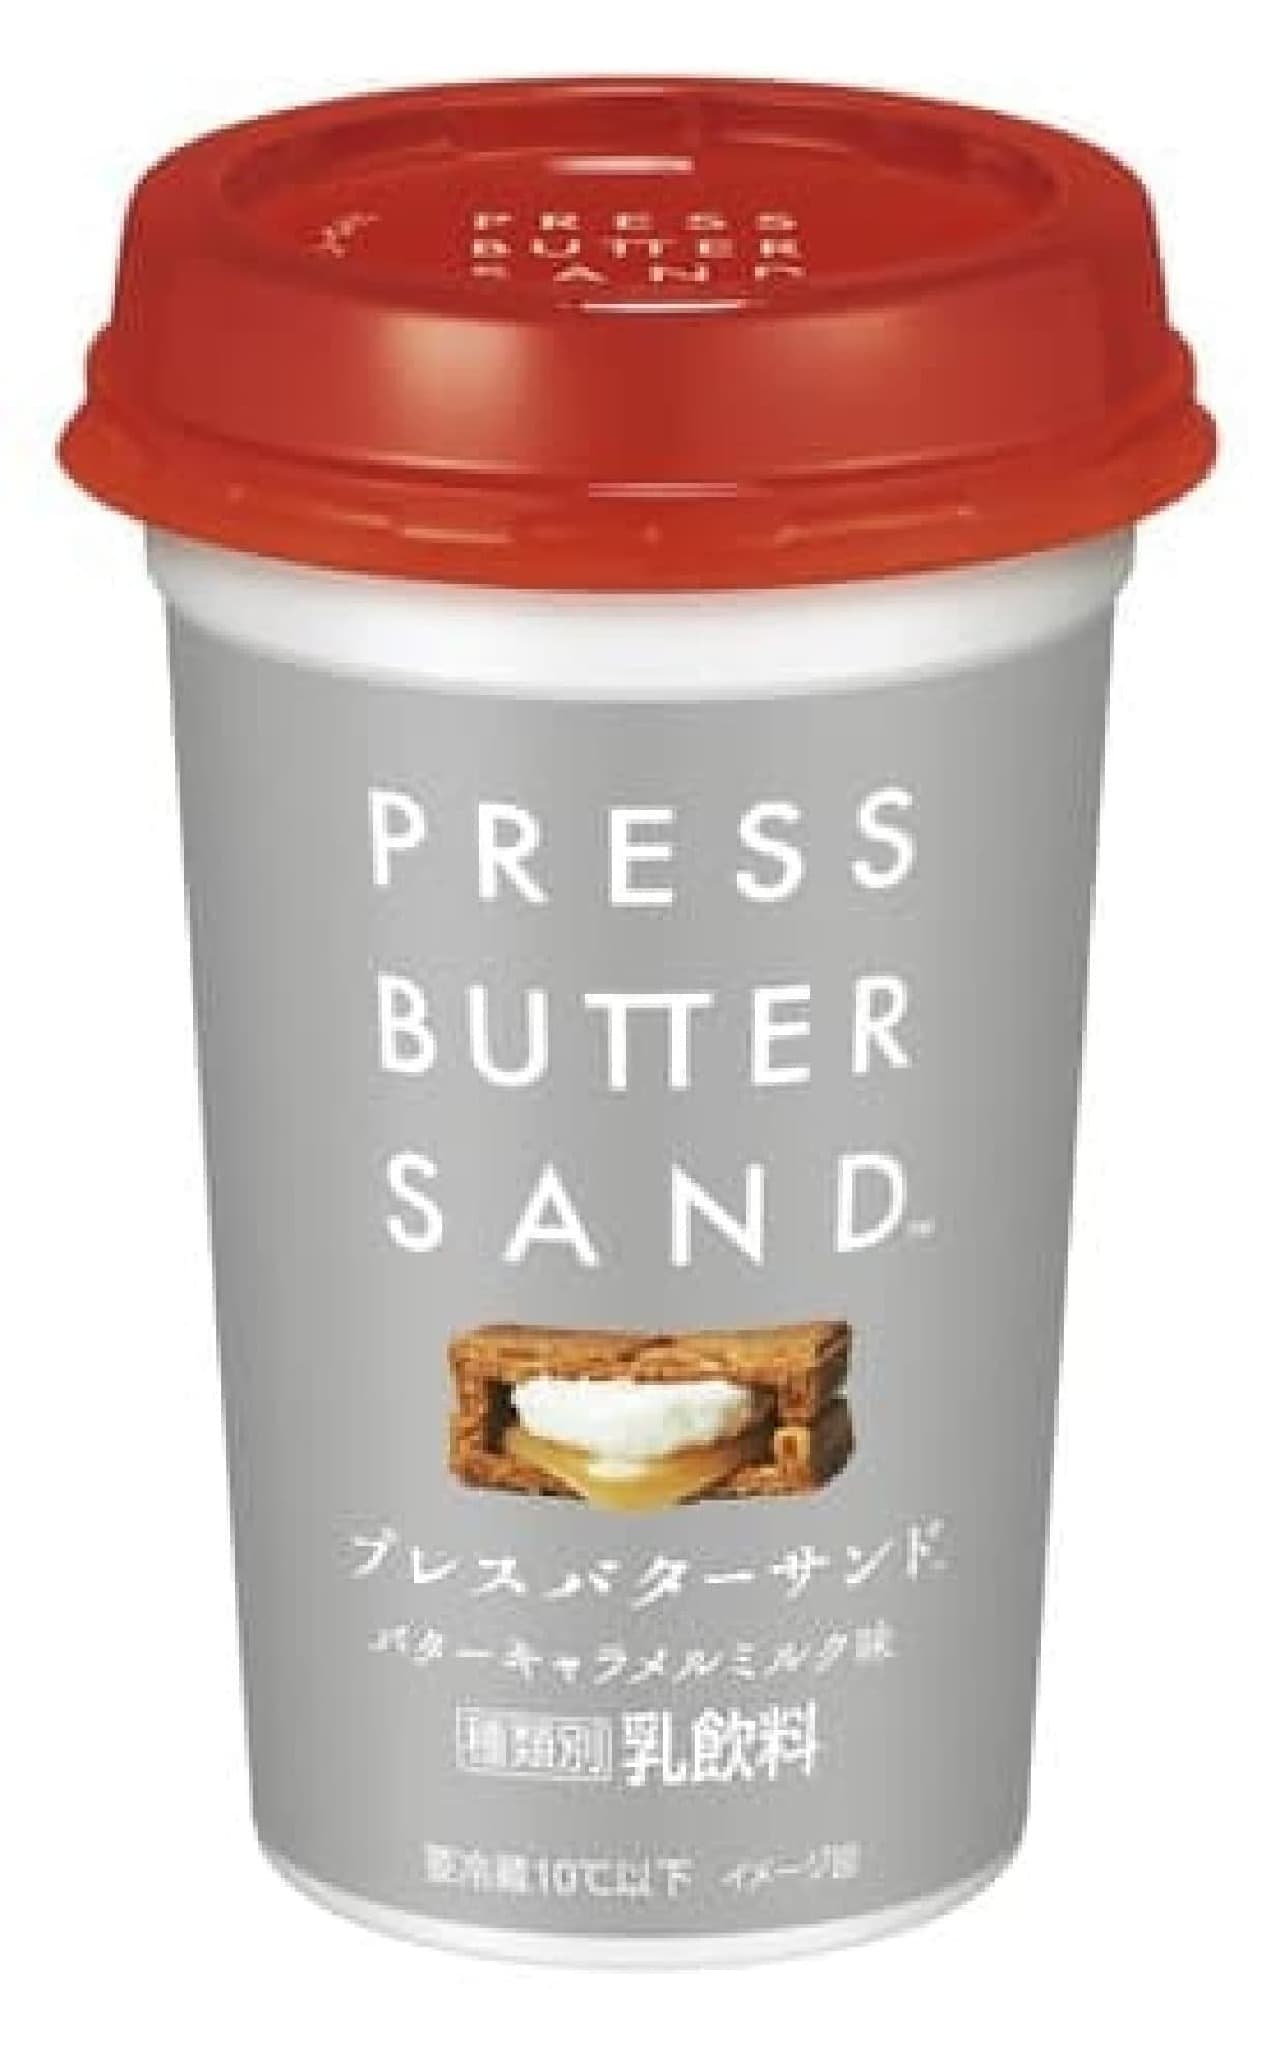 PRESS BUTTER SAND butter caramel milk flavor